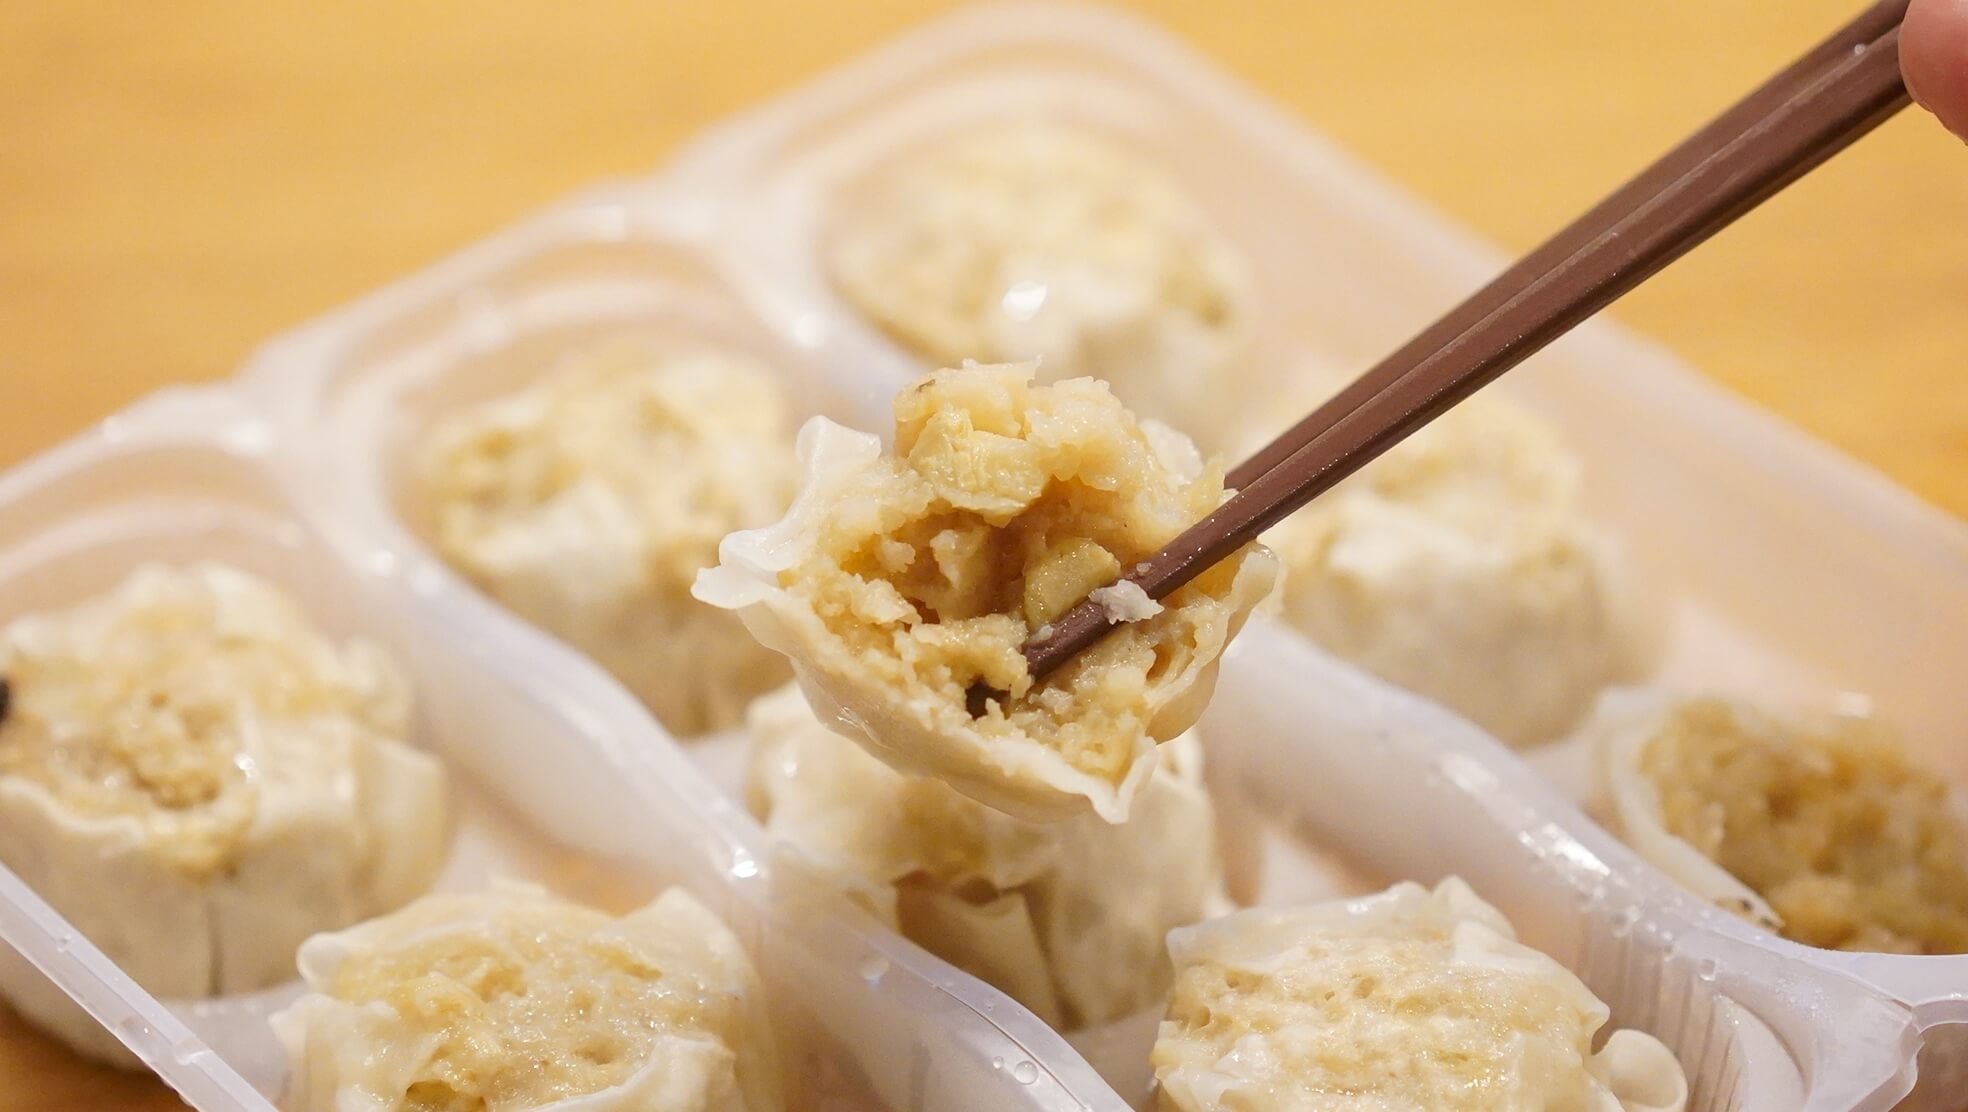 イオン・トップバリュ（TopValu）の「シューマイ」の冷凍食品の断面の写真